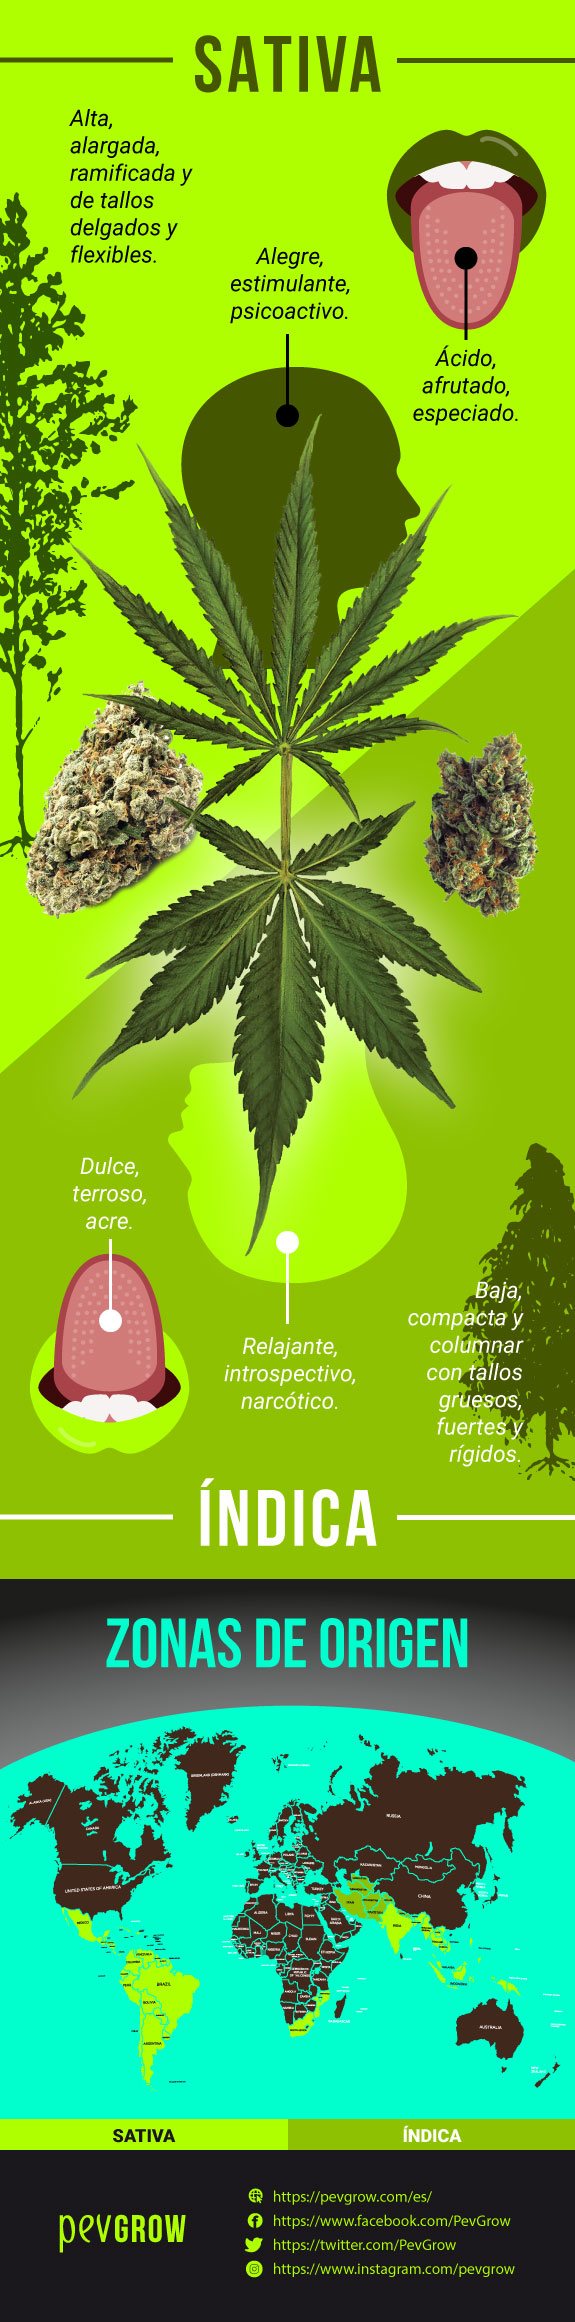 Infografía comparando las caracteristicas de una planta Sativa y una Indica